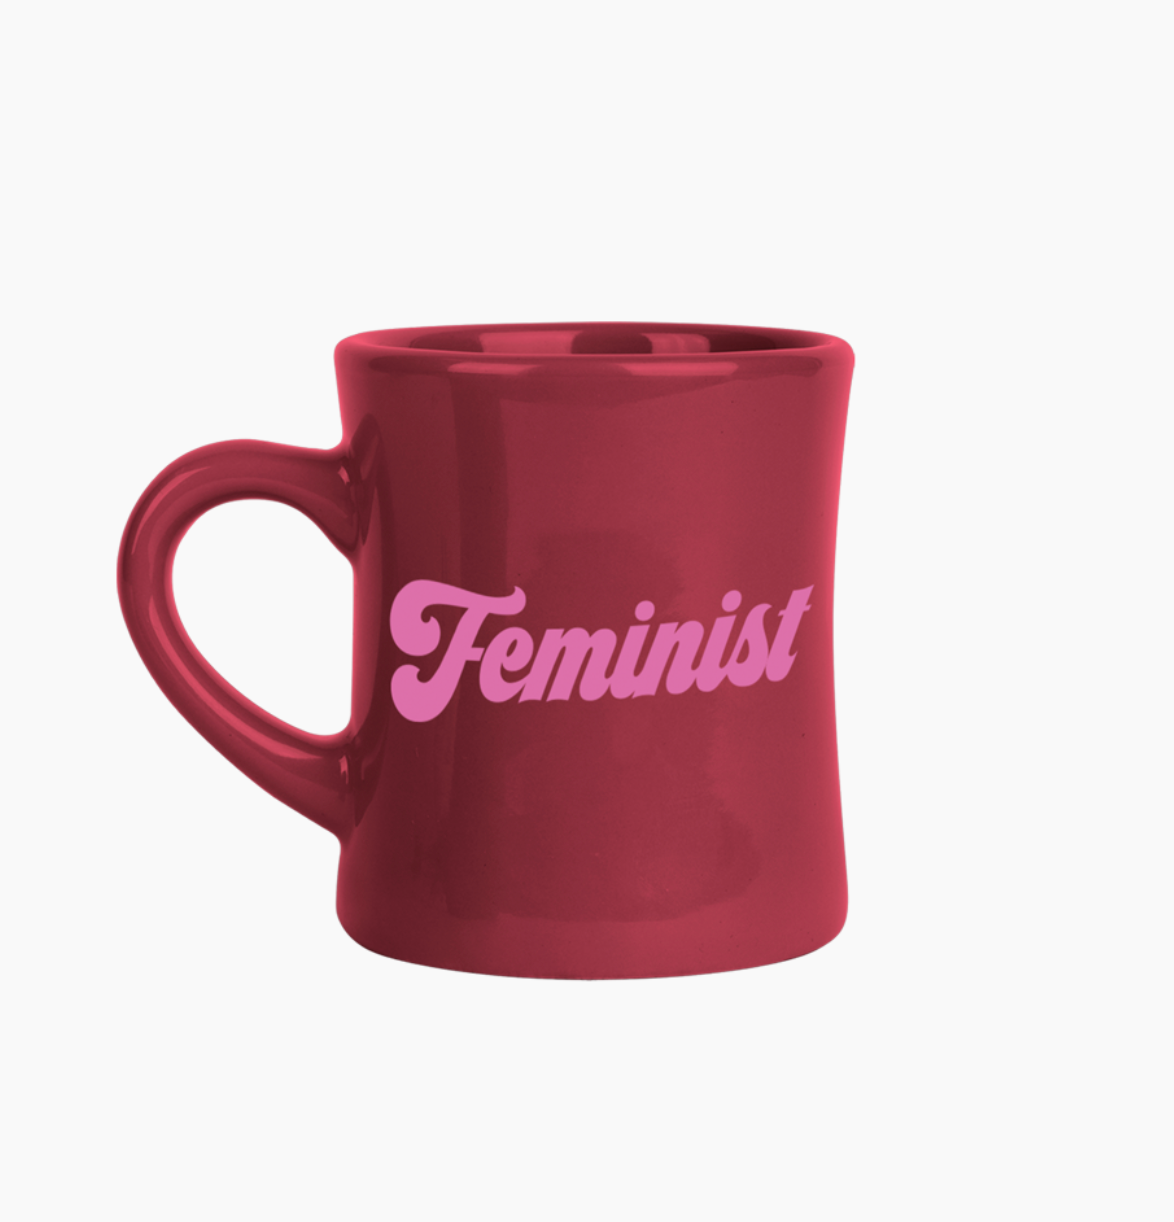 Feminist- Dinner Mug